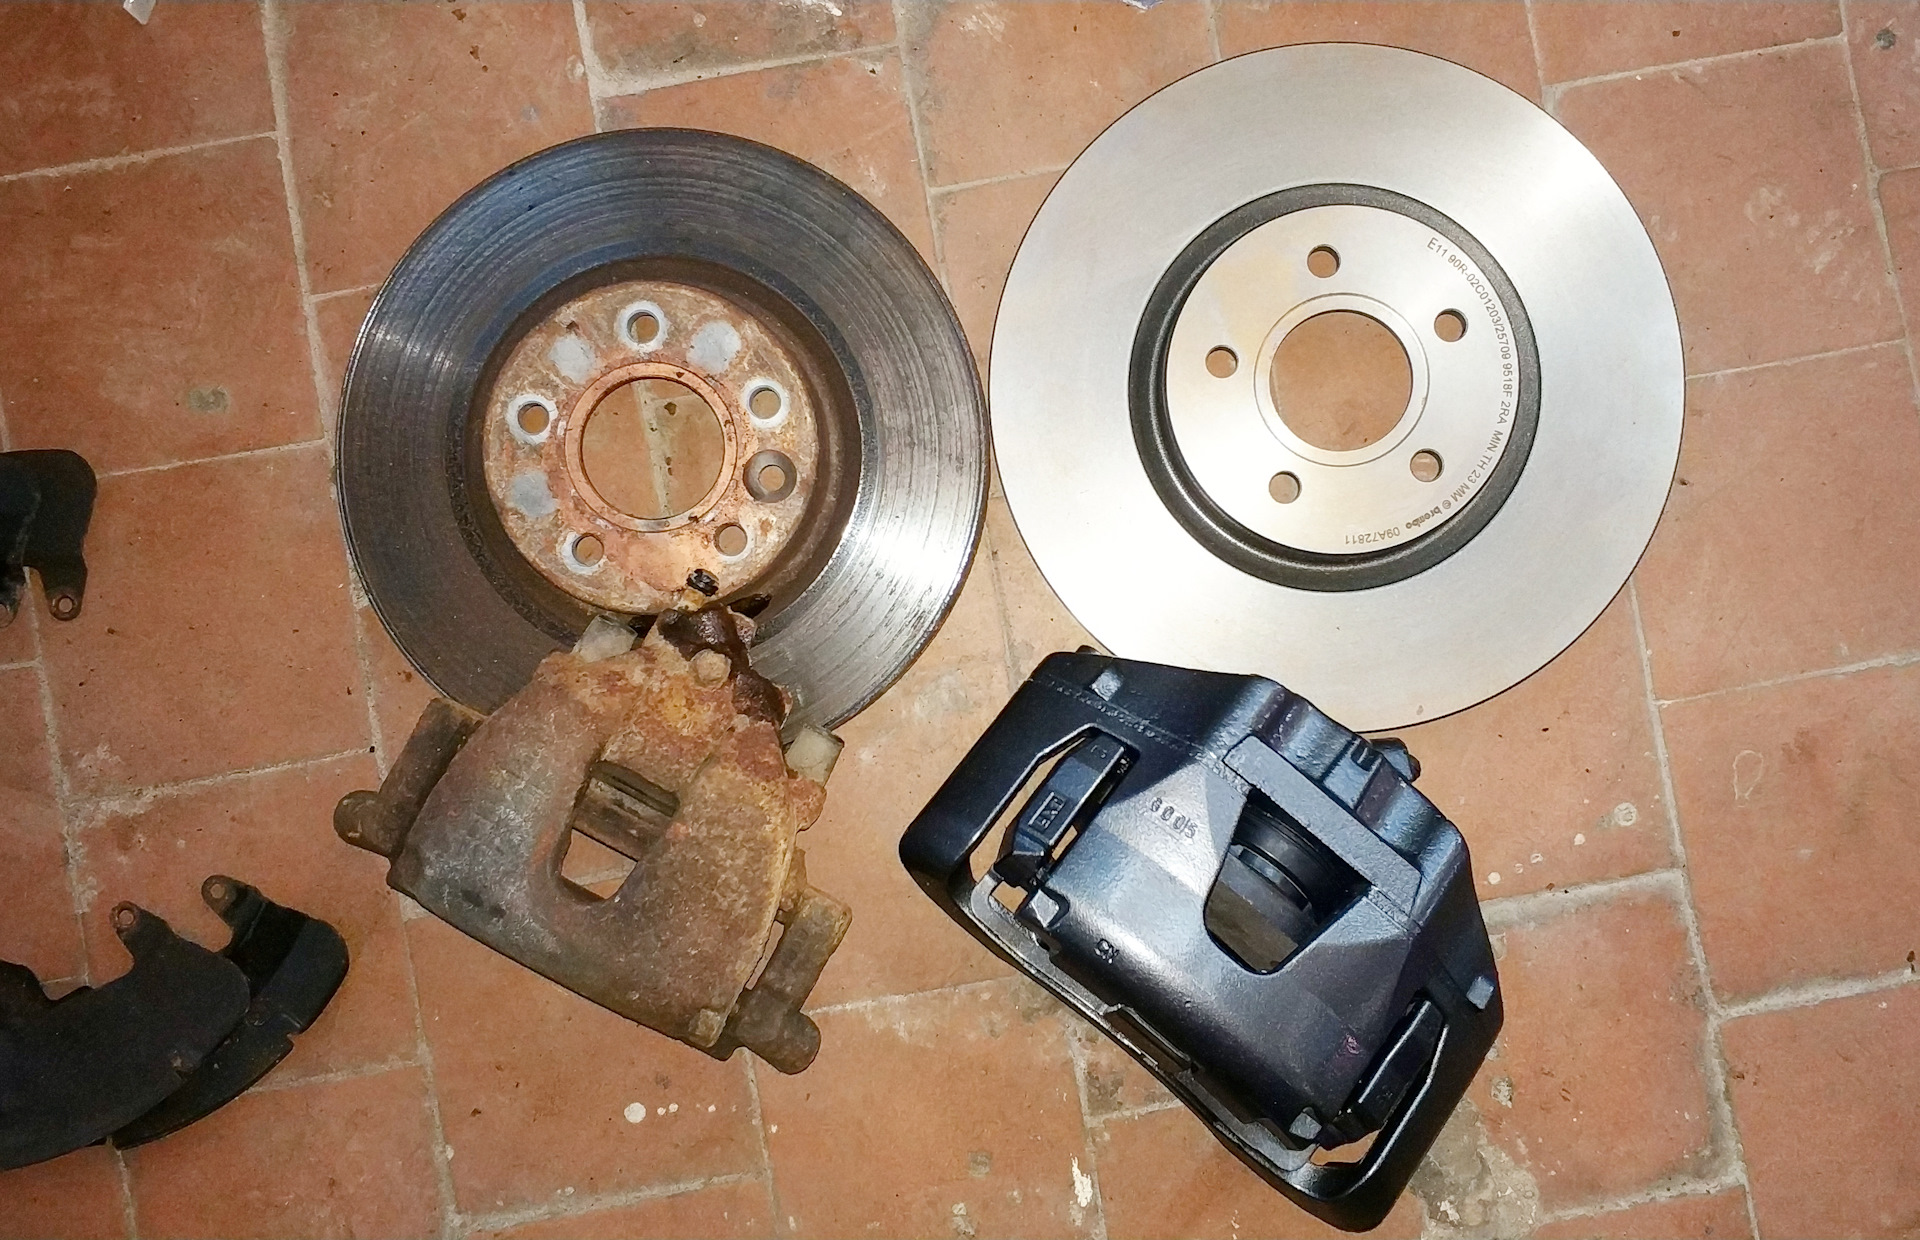 Диски тормозные передние куга 2. Ford Kuga 2.5 TRW диски. Ford Kuga 2 тормозной диск передний USB Performance. Ford Kuga 2 одинаковые ли тормозные передние диски с Kuga 3. Форд Куга 1,5 2017 передние тормозные диски.